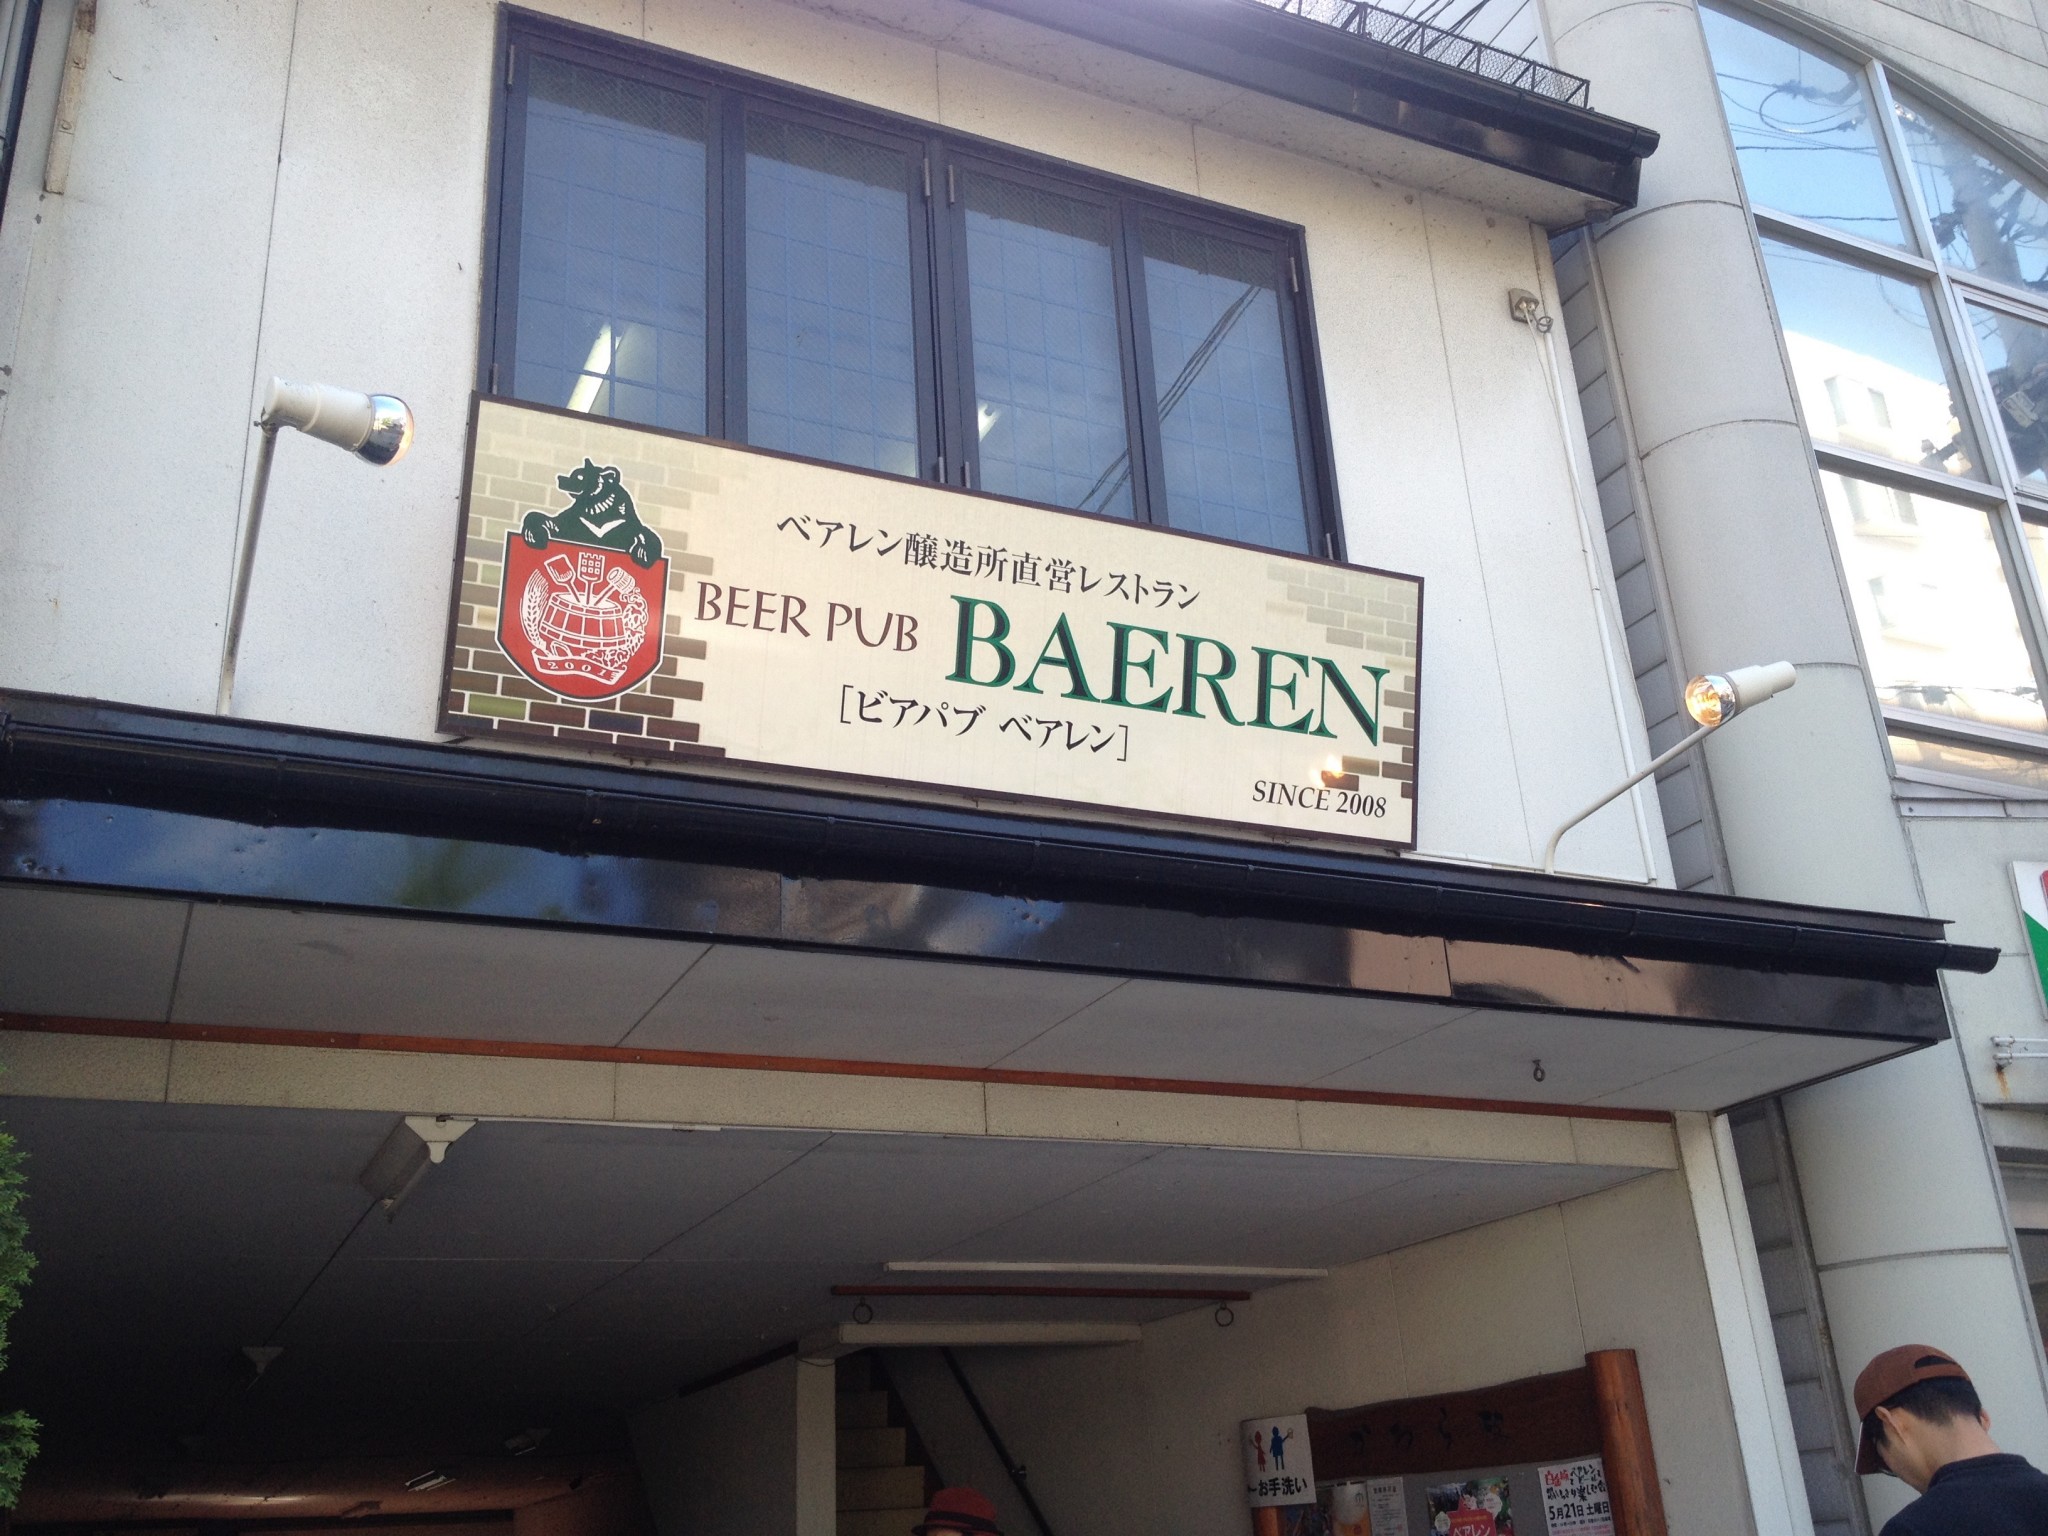 For Craft Beer Lovers! Beer Pub Baeren in Morioka